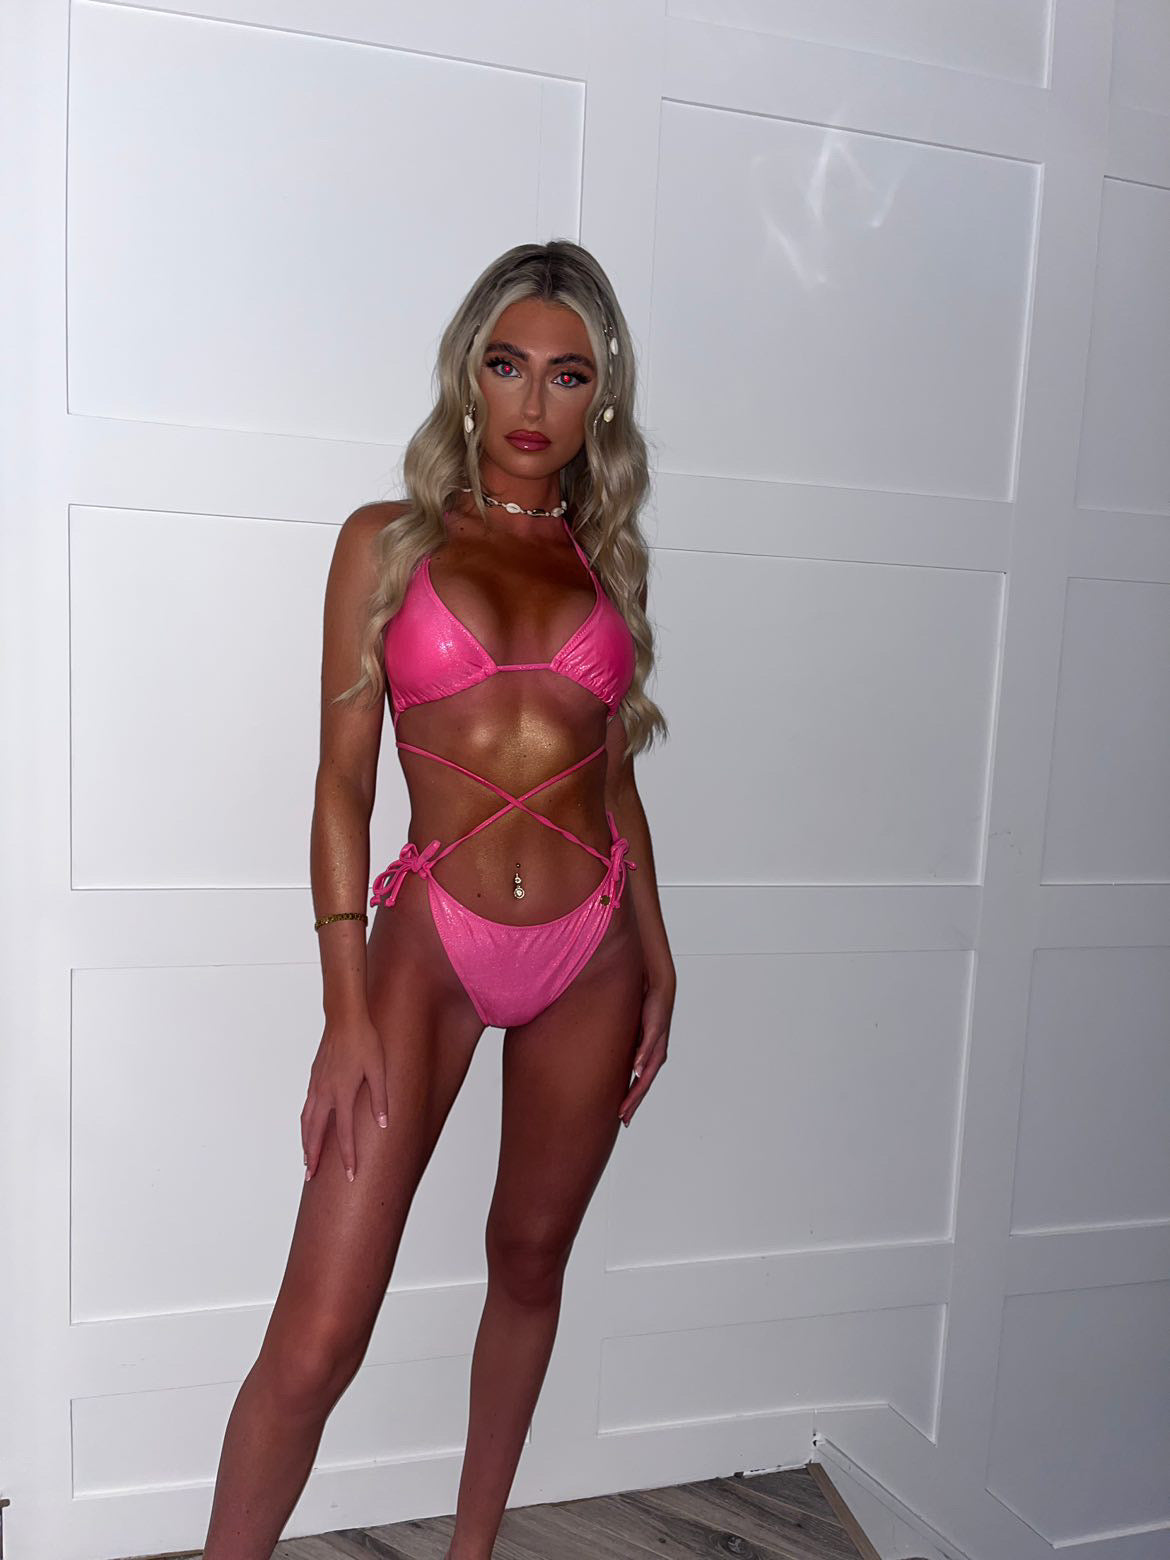 Barbie pink metallic bikini top and bottoms